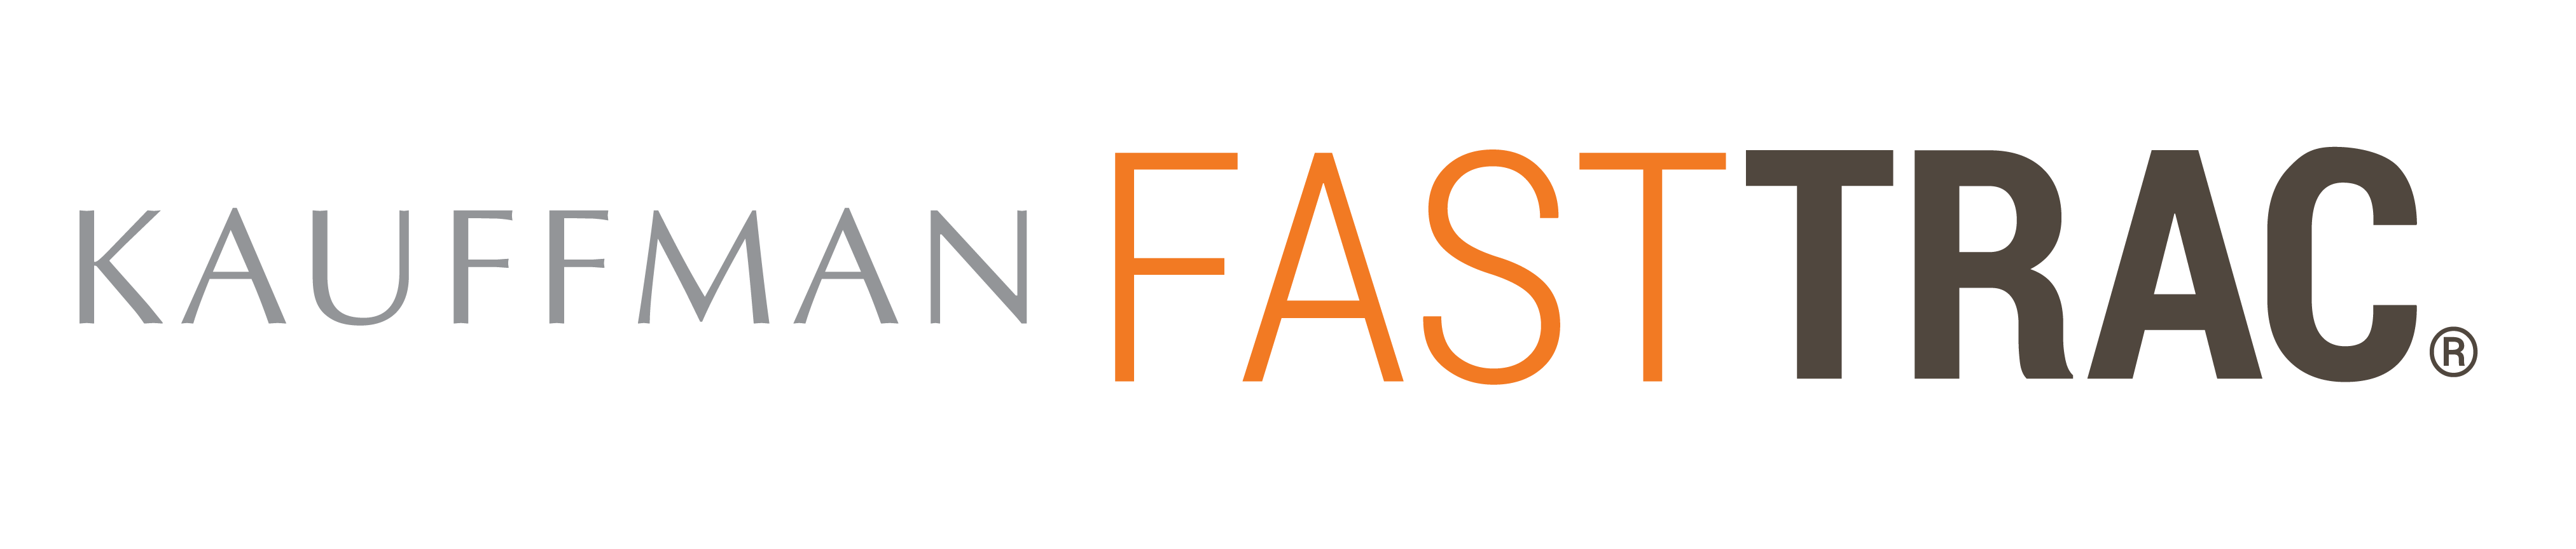 Kauffman FastTrac logo